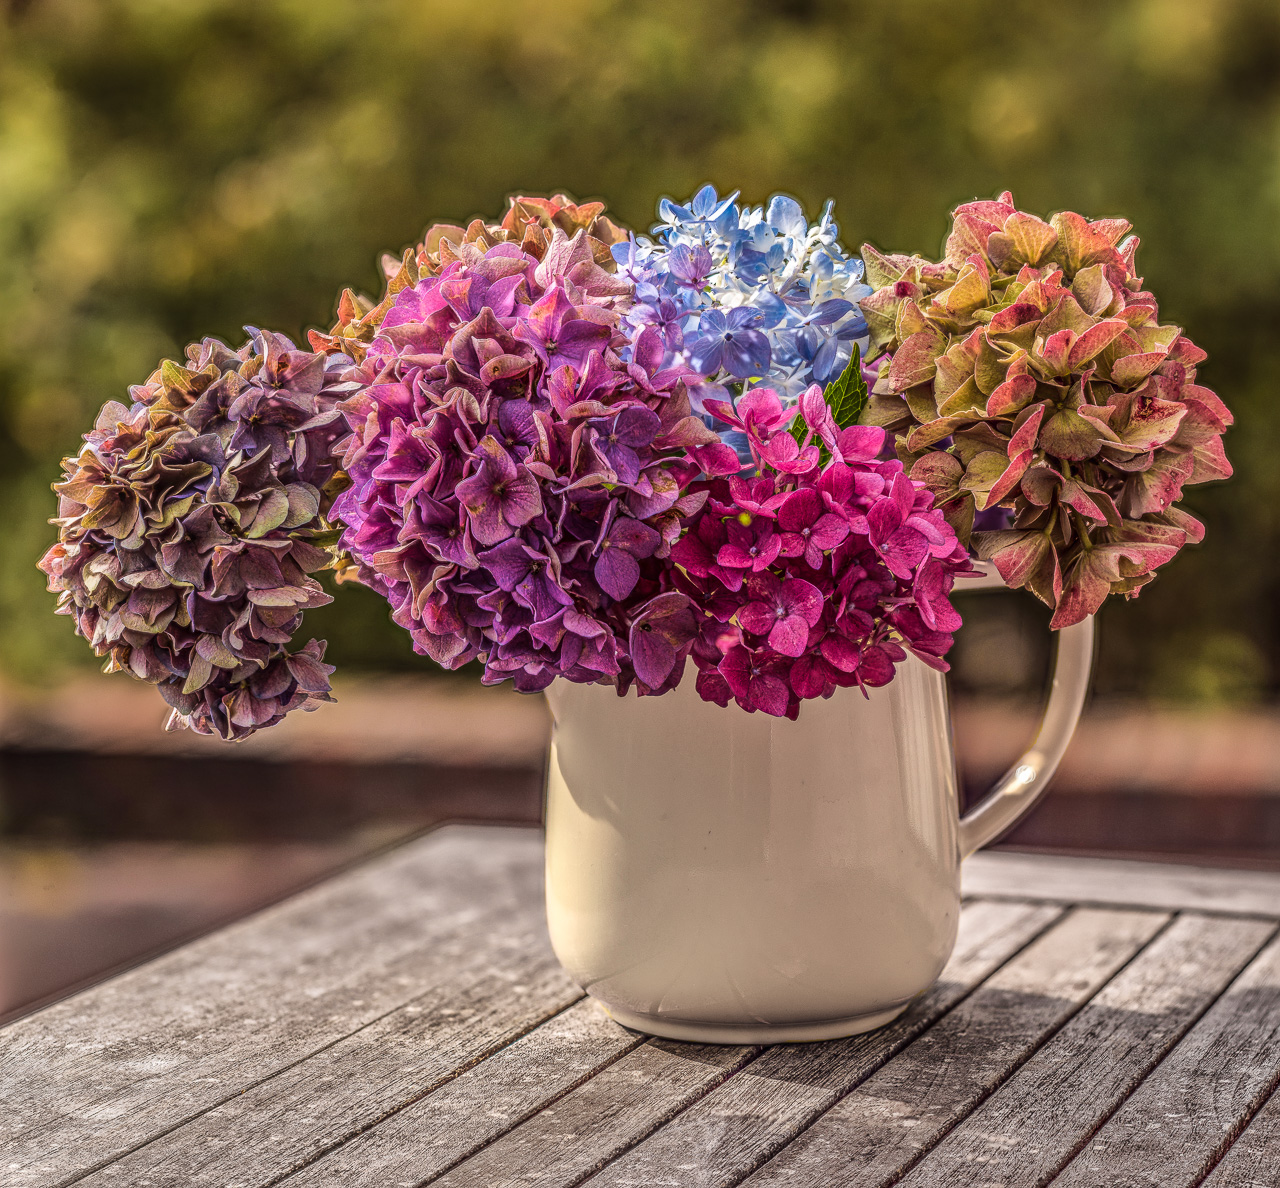 Auf einem verwitterten Holztisch steht draußen eine keramische Vase, eher ein Krug, mit mehreren Hortensienblüten in vielen verschiedenen Farben von Gelb über Blau bis Violett